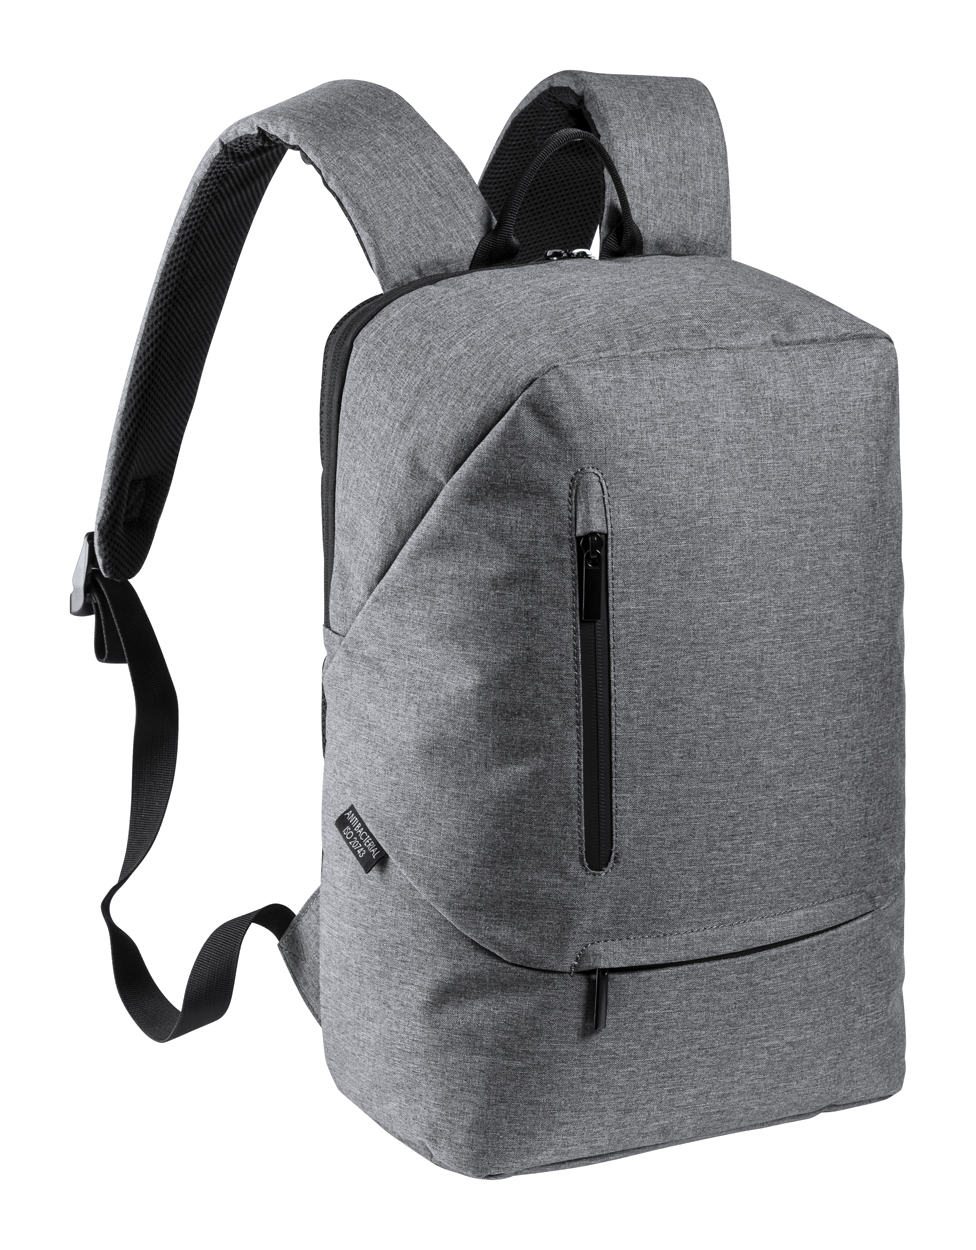 Mordux antibacterial backpack - grey